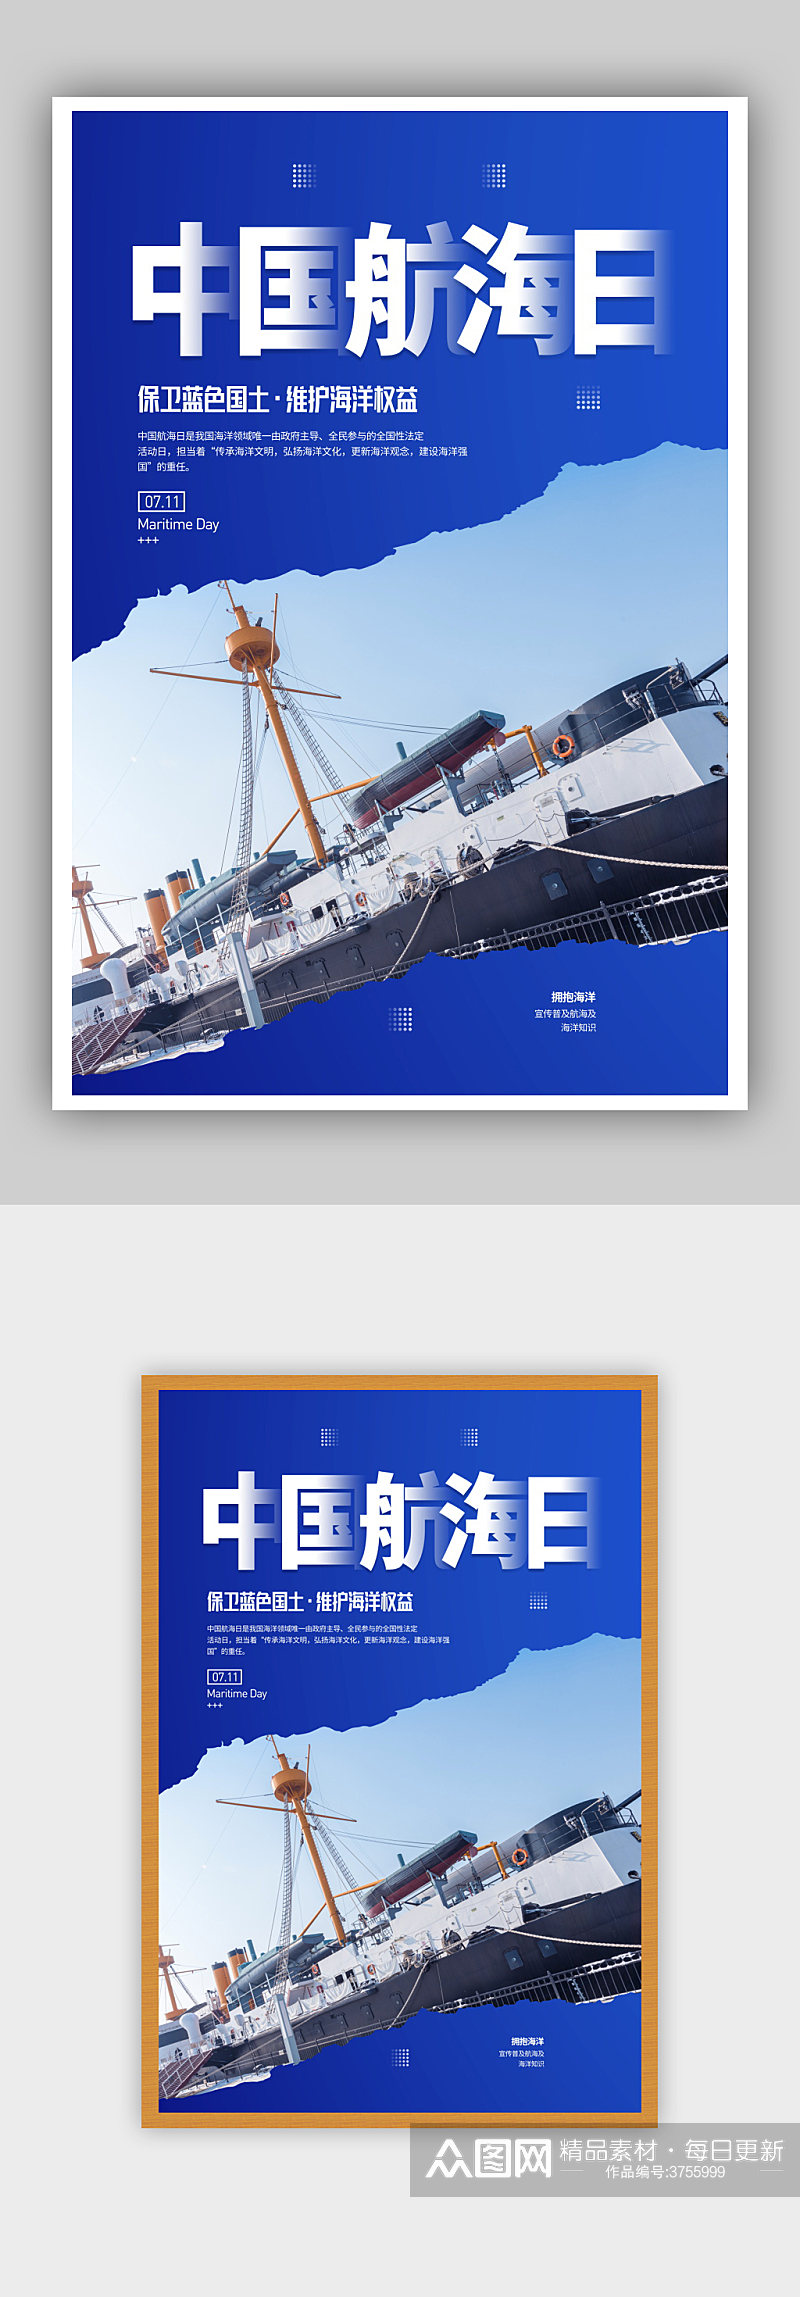 简约7月11日中国航海日宣传海报素材